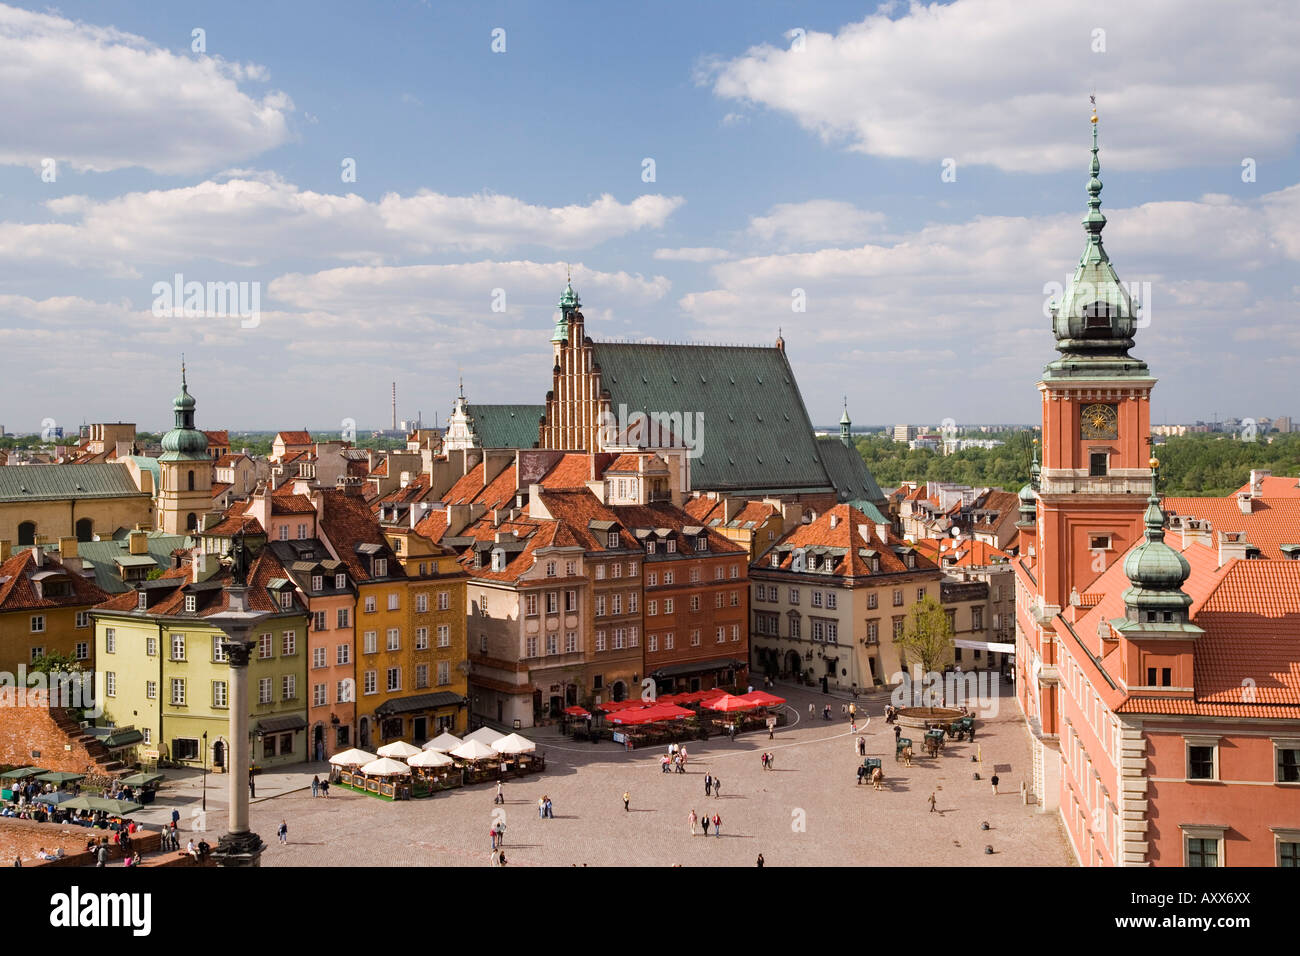 Erhöhten Blick auf das königliche Schloss und Schlossplatz (Plac Zamkowy), Altstadt (Stare Miasto), Warschau, Polen Stockfoto